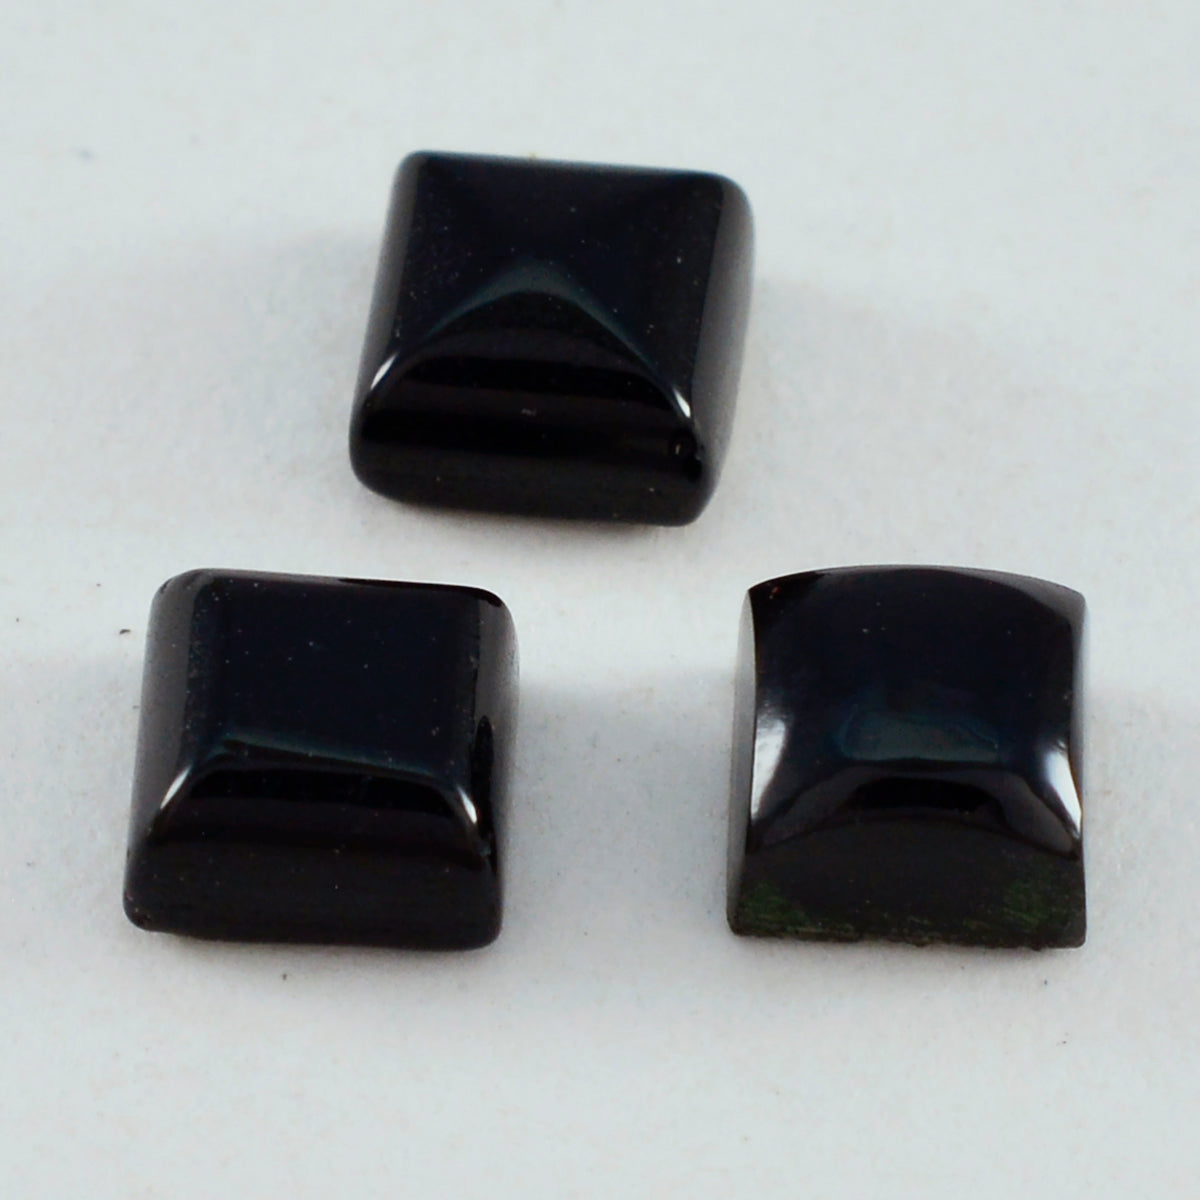 riyogems 1pc cabochon d'onyx noir 10x10 mm forme carrée qualité surprenante pierre précieuse en vrac